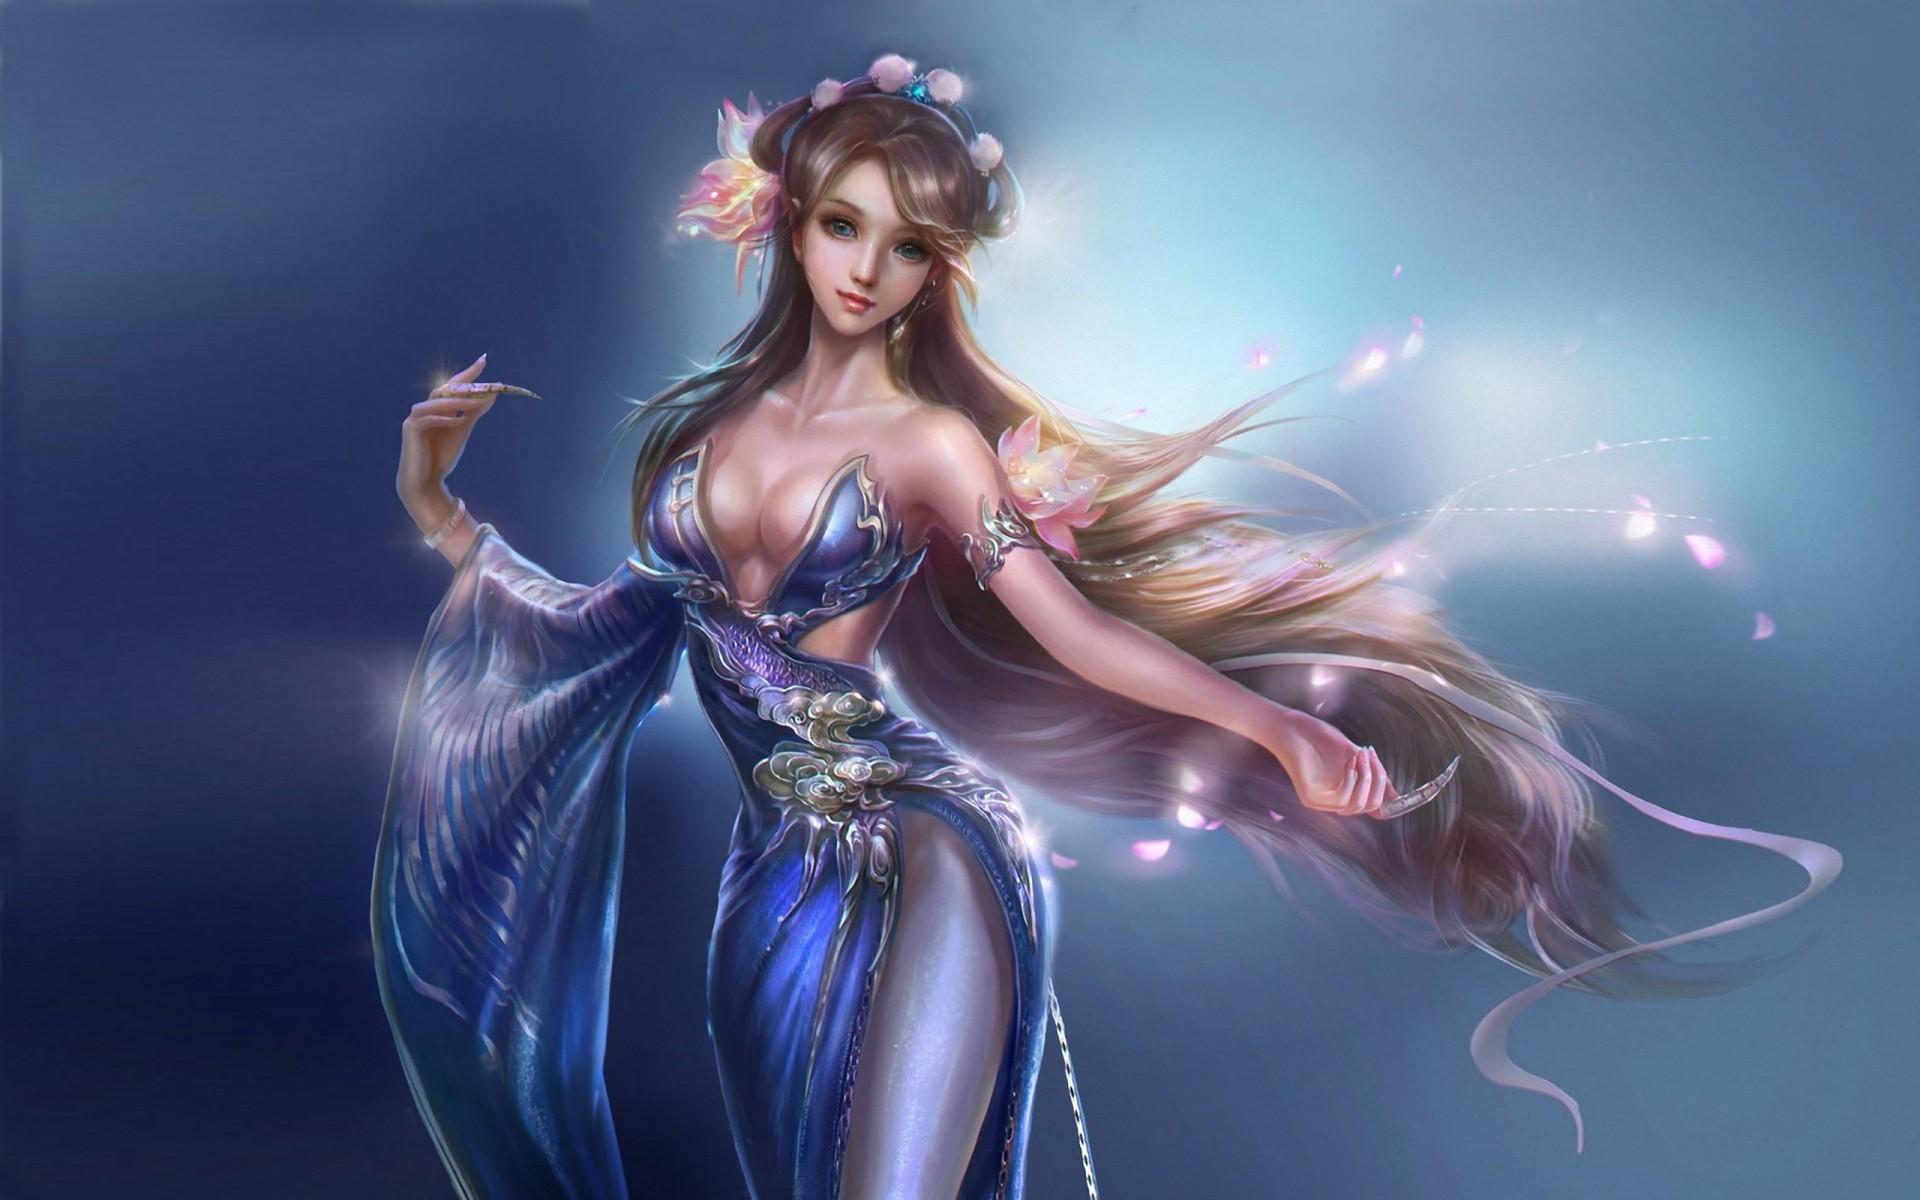 Beautiful Classical Oriental Girl Fantasy Art Wallpaper